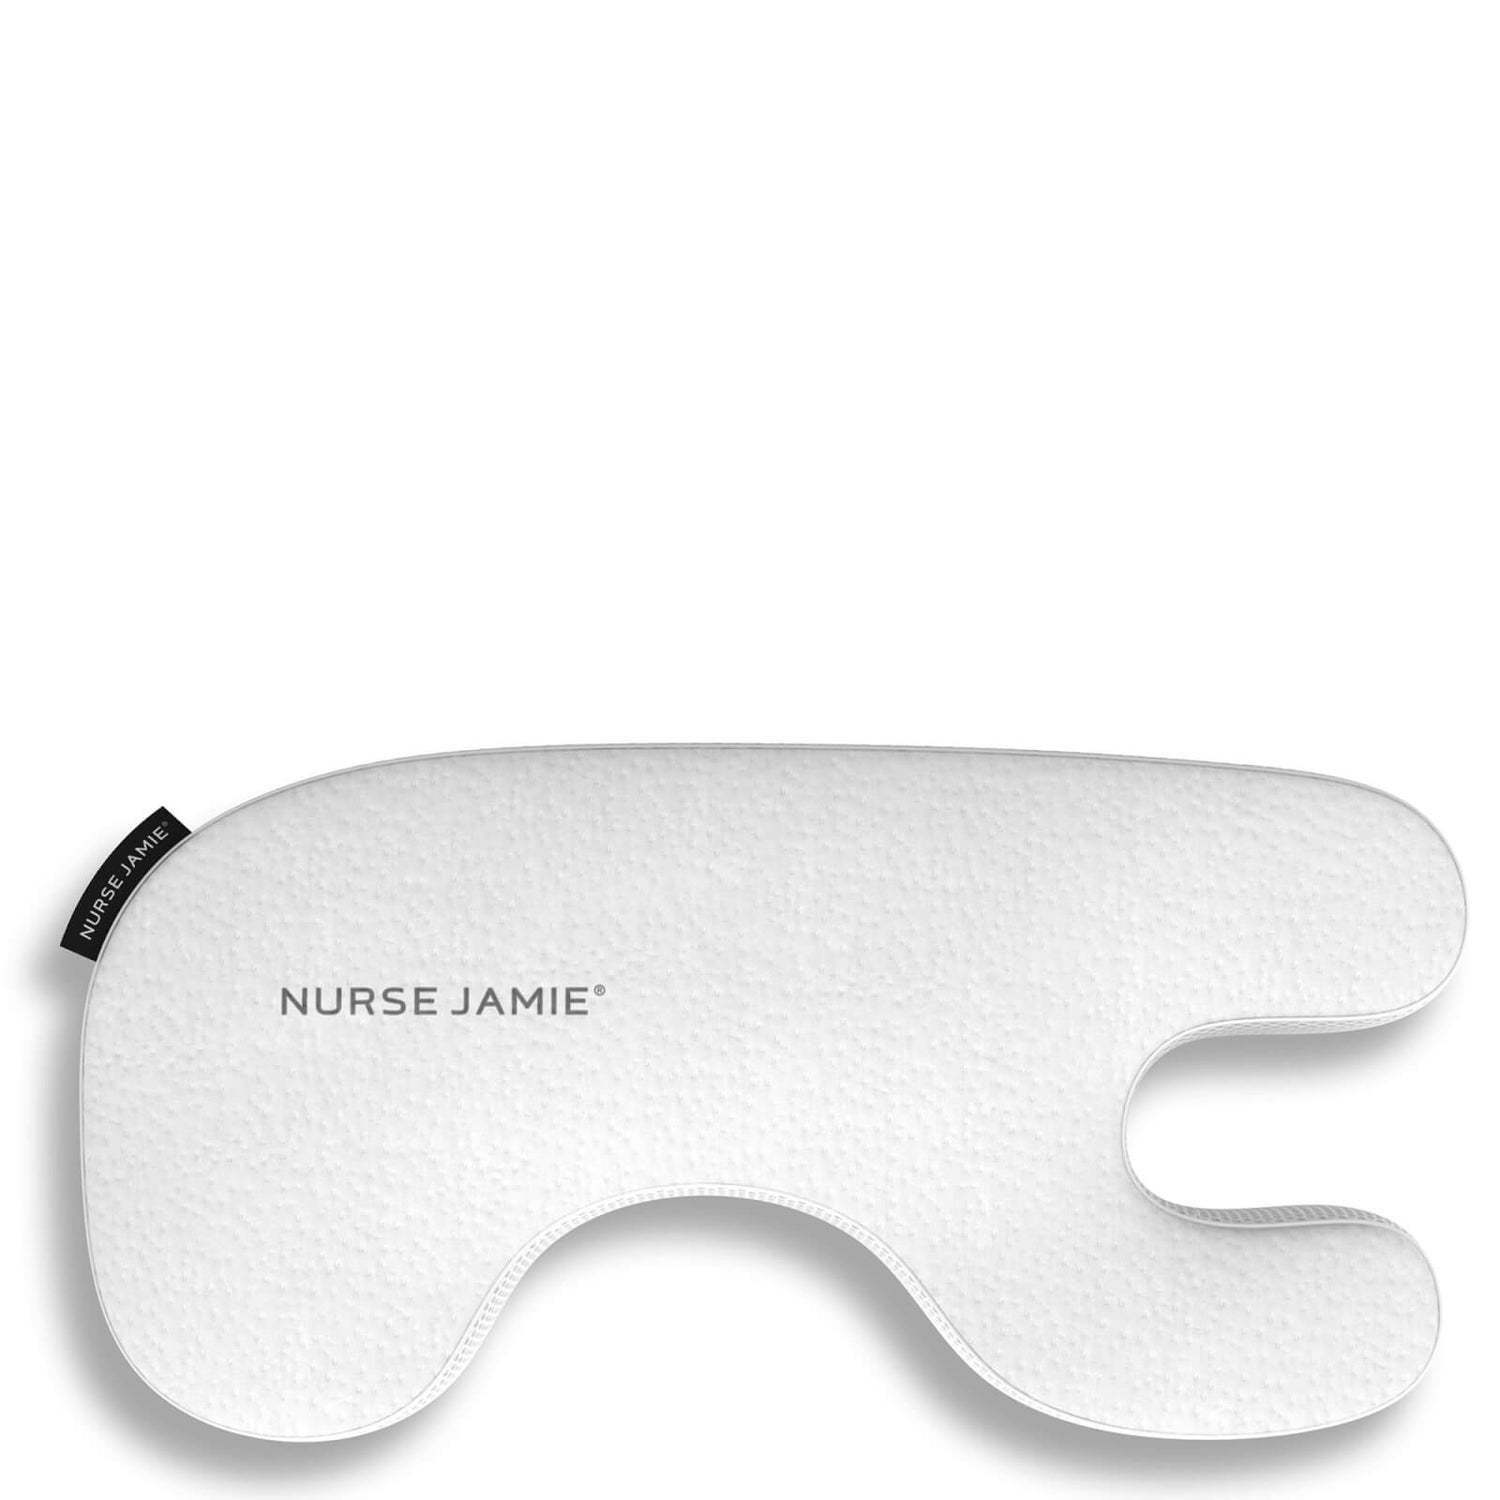 Nurse Jamie Beauty Bear Memory Foam Pillow (Various Shades)